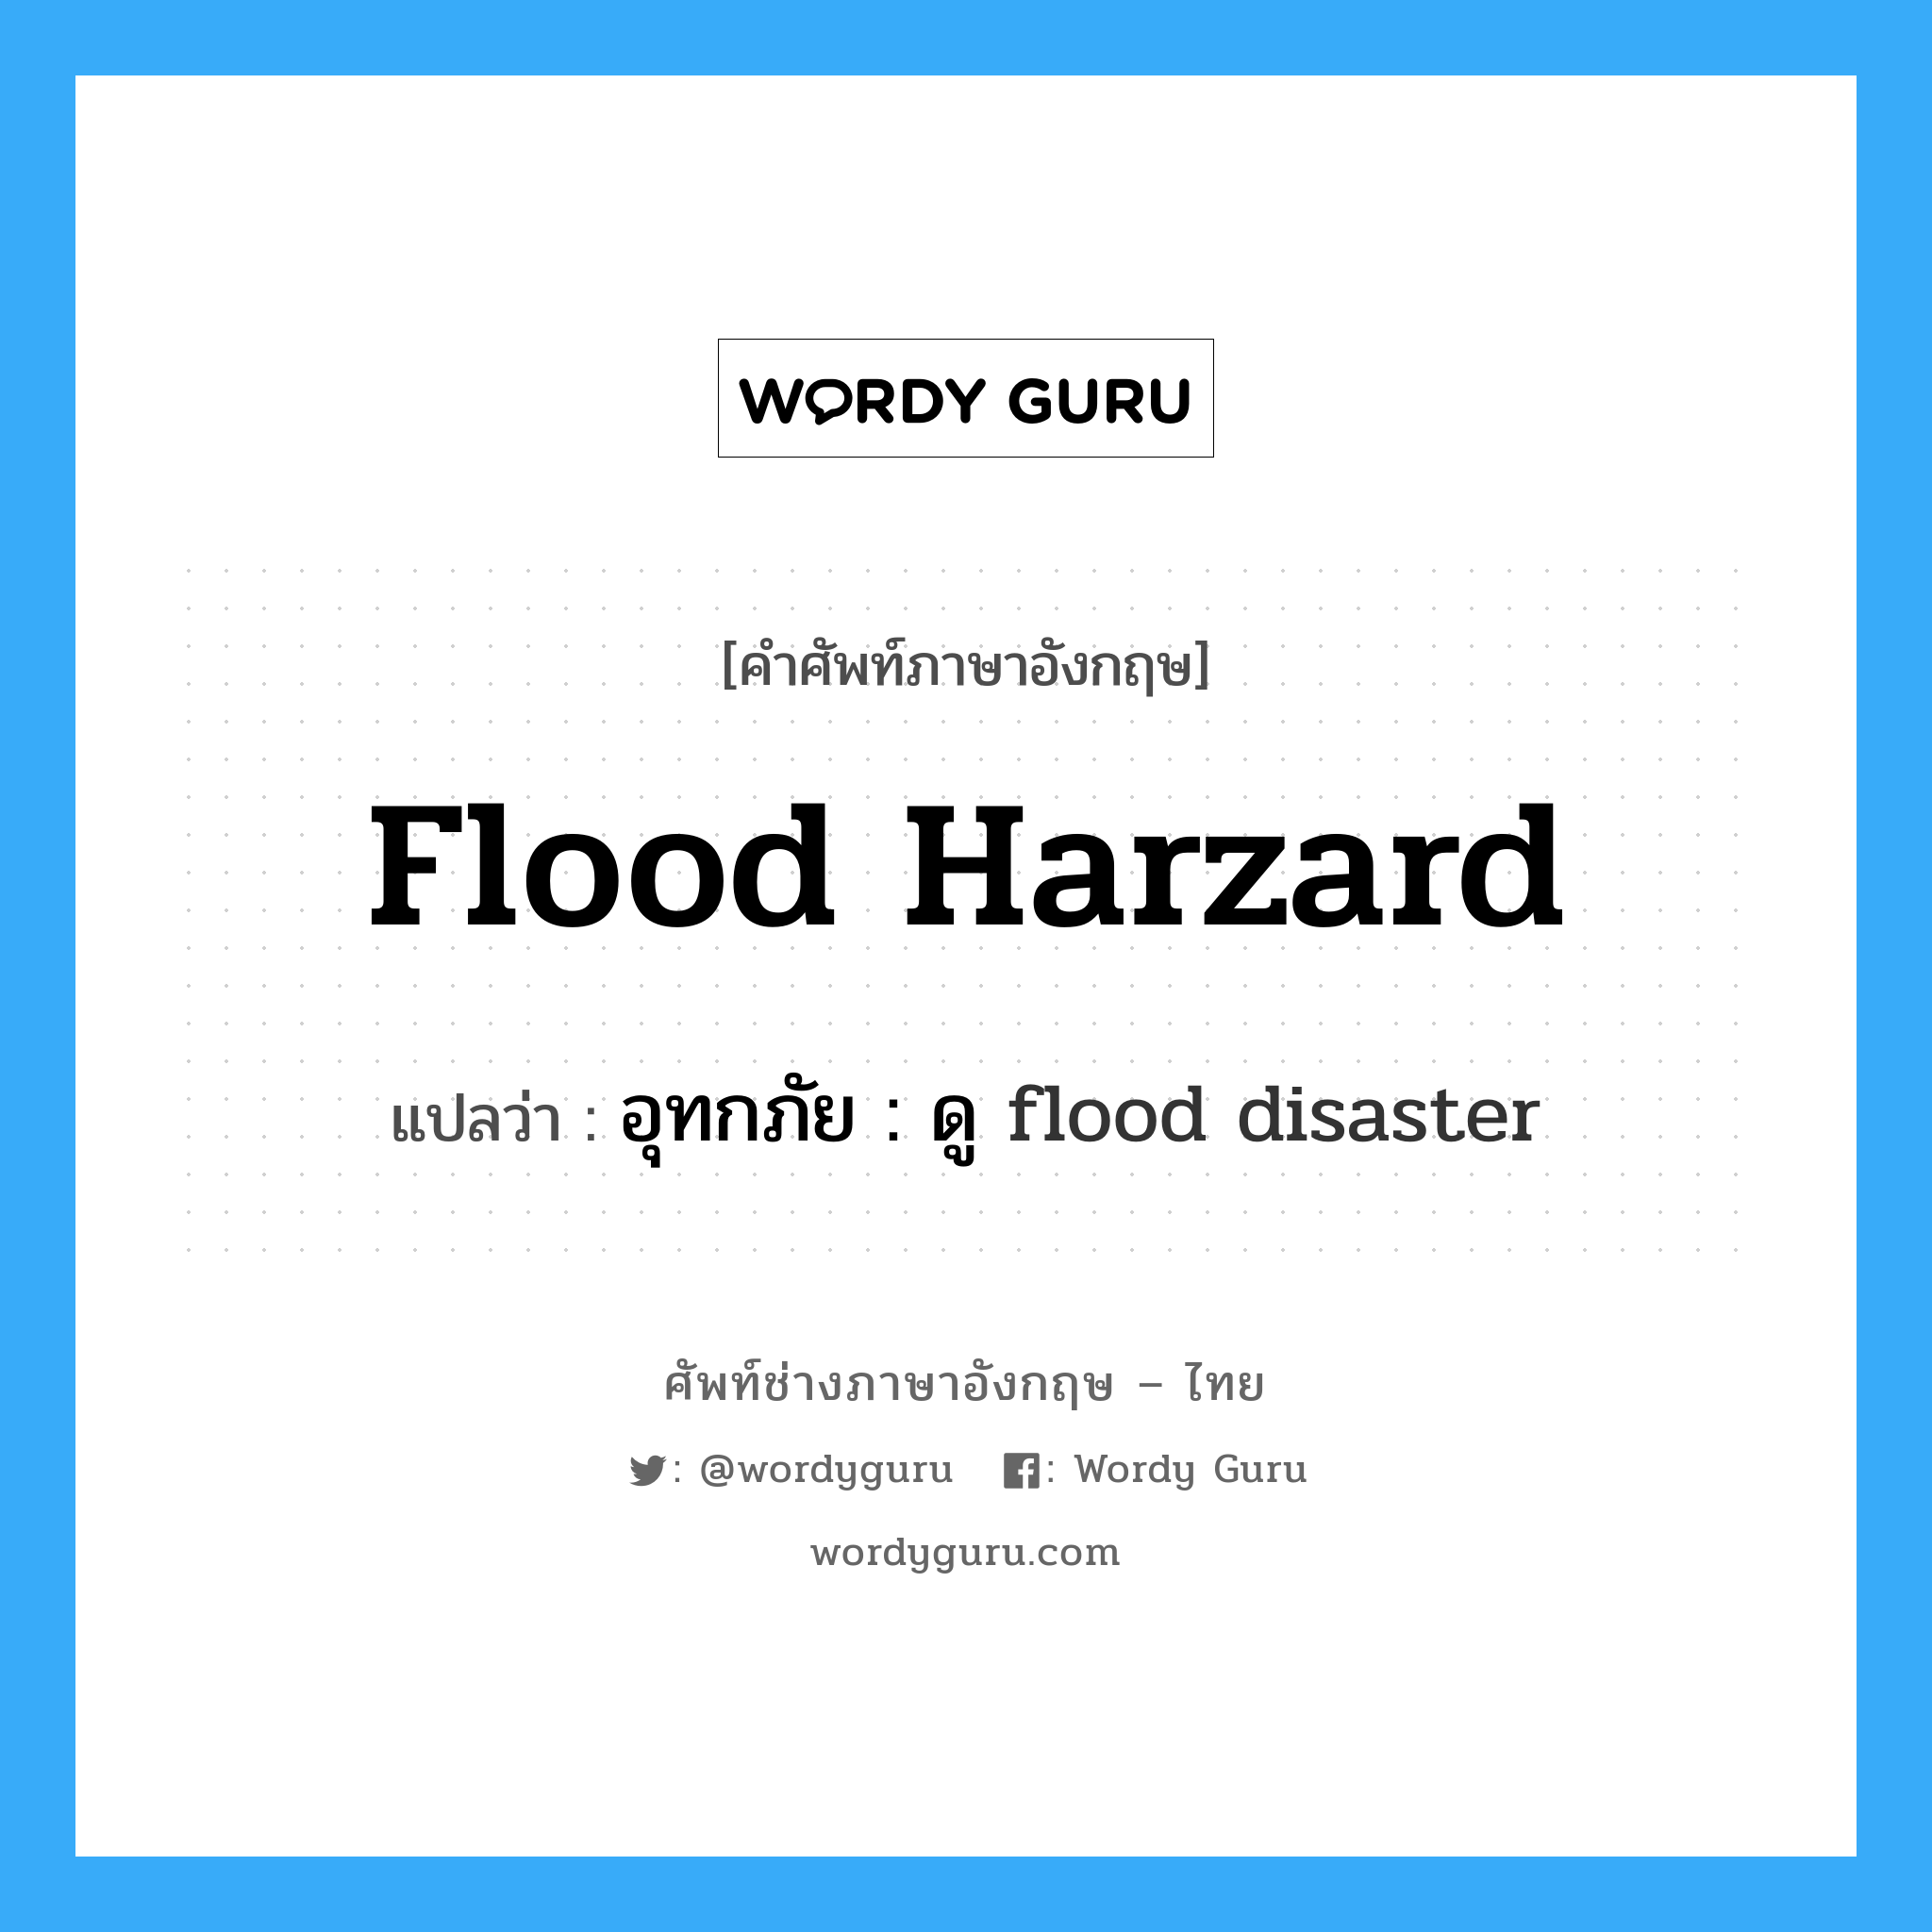 flood harzard แปลว่า?, คำศัพท์ช่างภาษาอังกฤษ - ไทย flood harzard คำศัพท์ภาษาอังกฤษ flood harzard แปลว่า อุทกภัย : ดู flood disaster